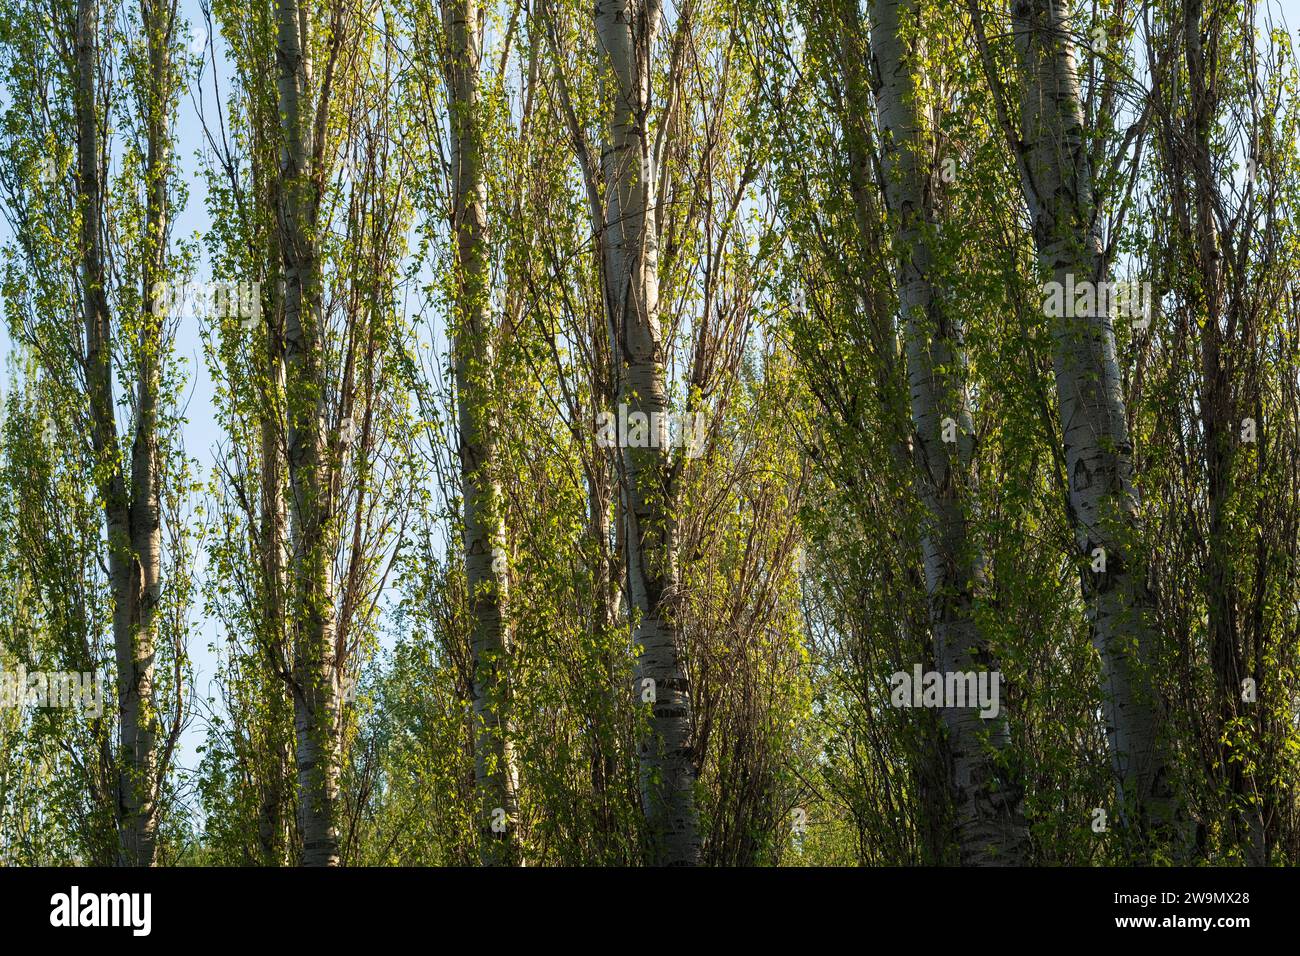 Hauts arbres, paysage de la nature fond de ciel bleu, cadre. Papier peint de printemps Banque D'Images